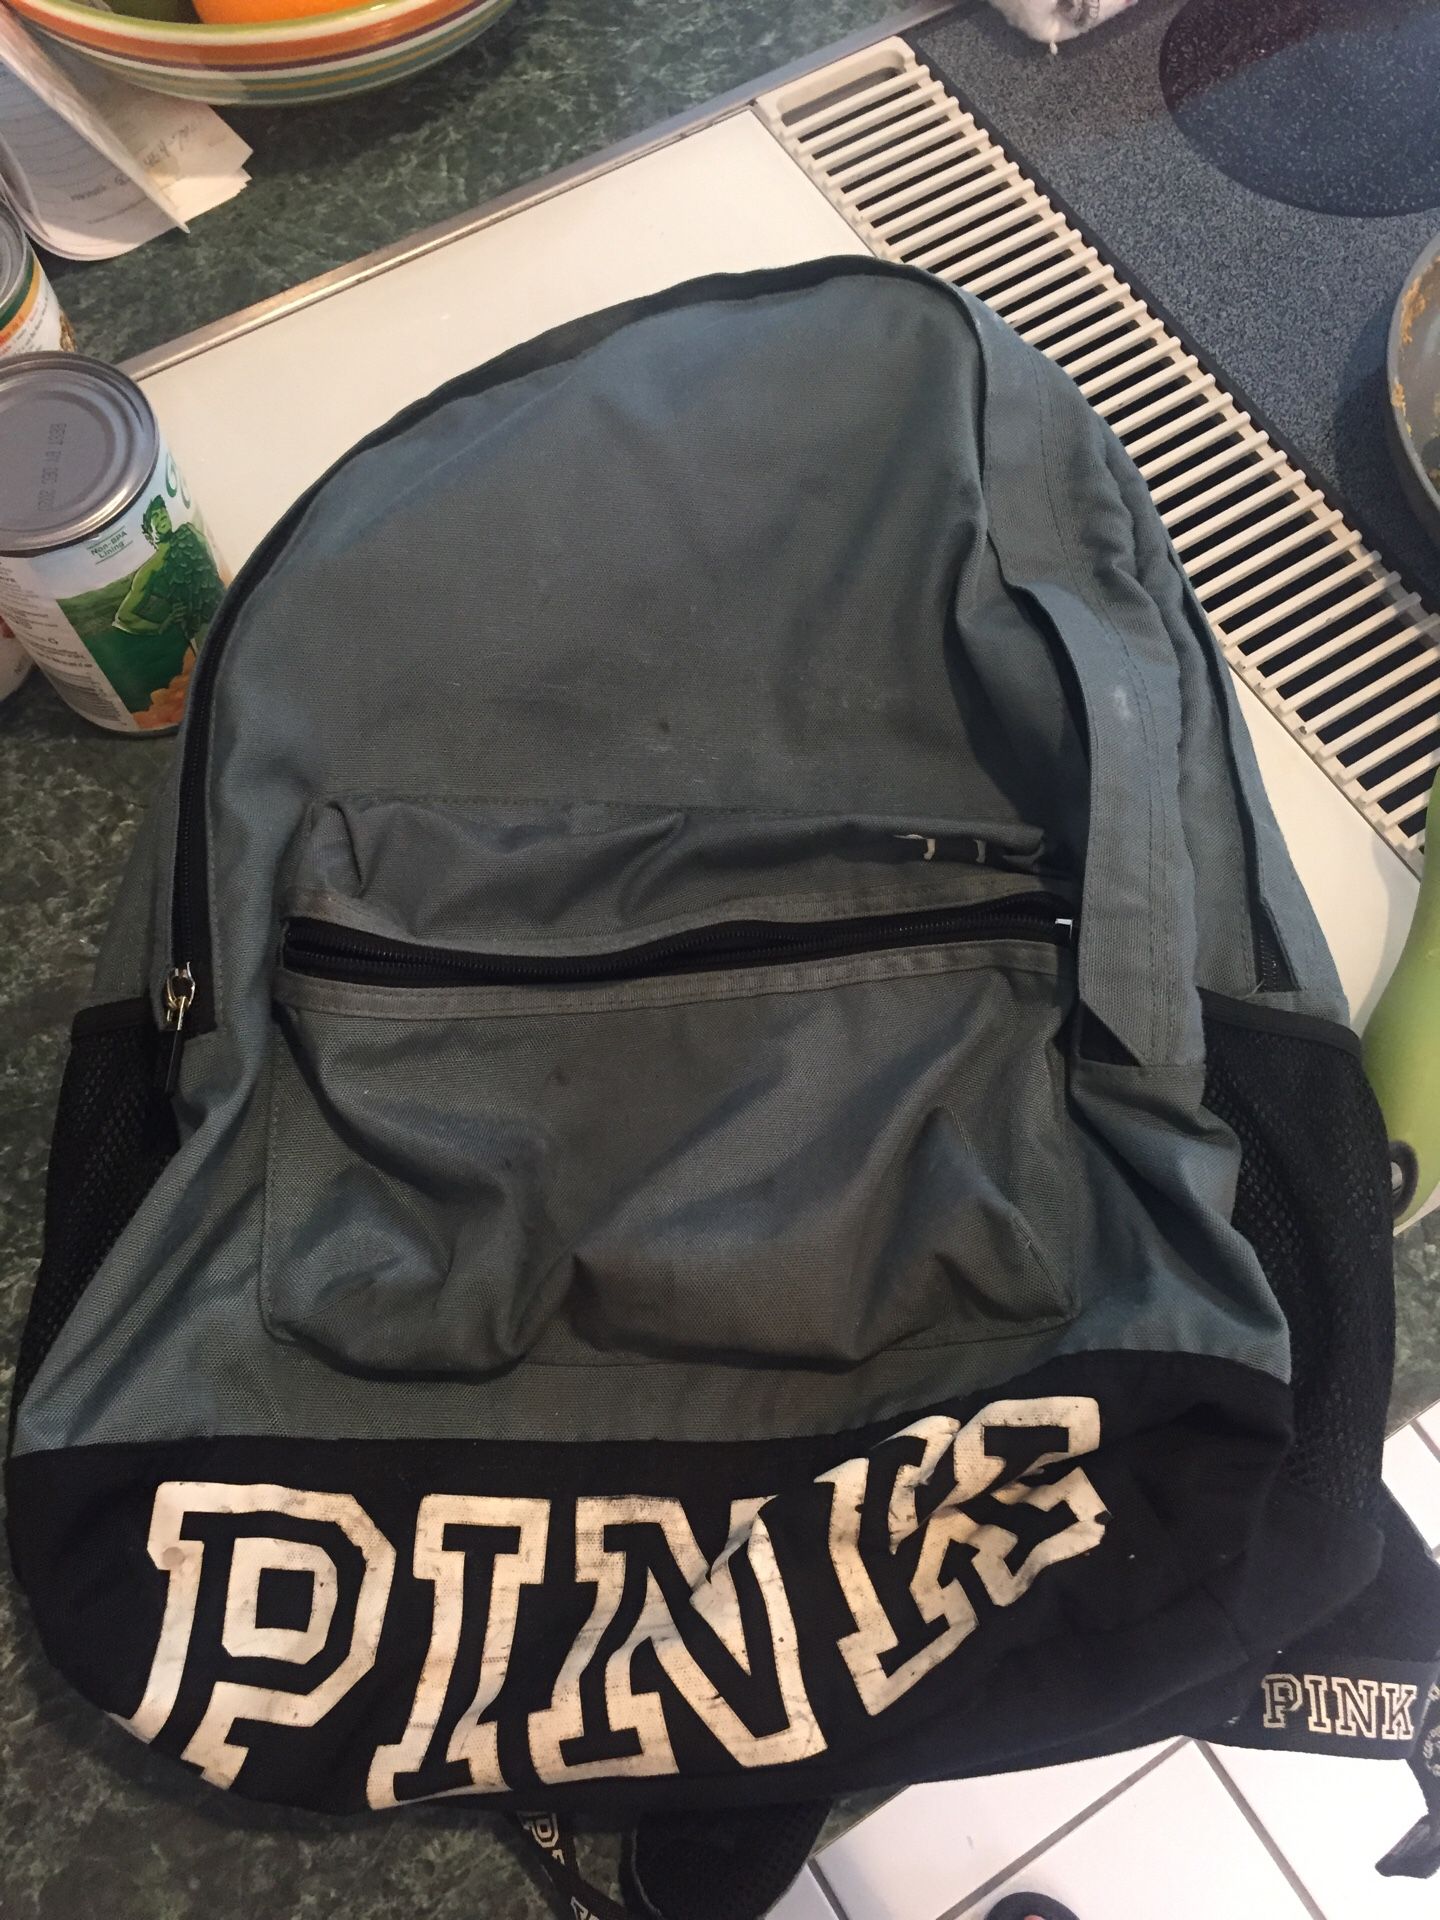 Backpack pink backpack